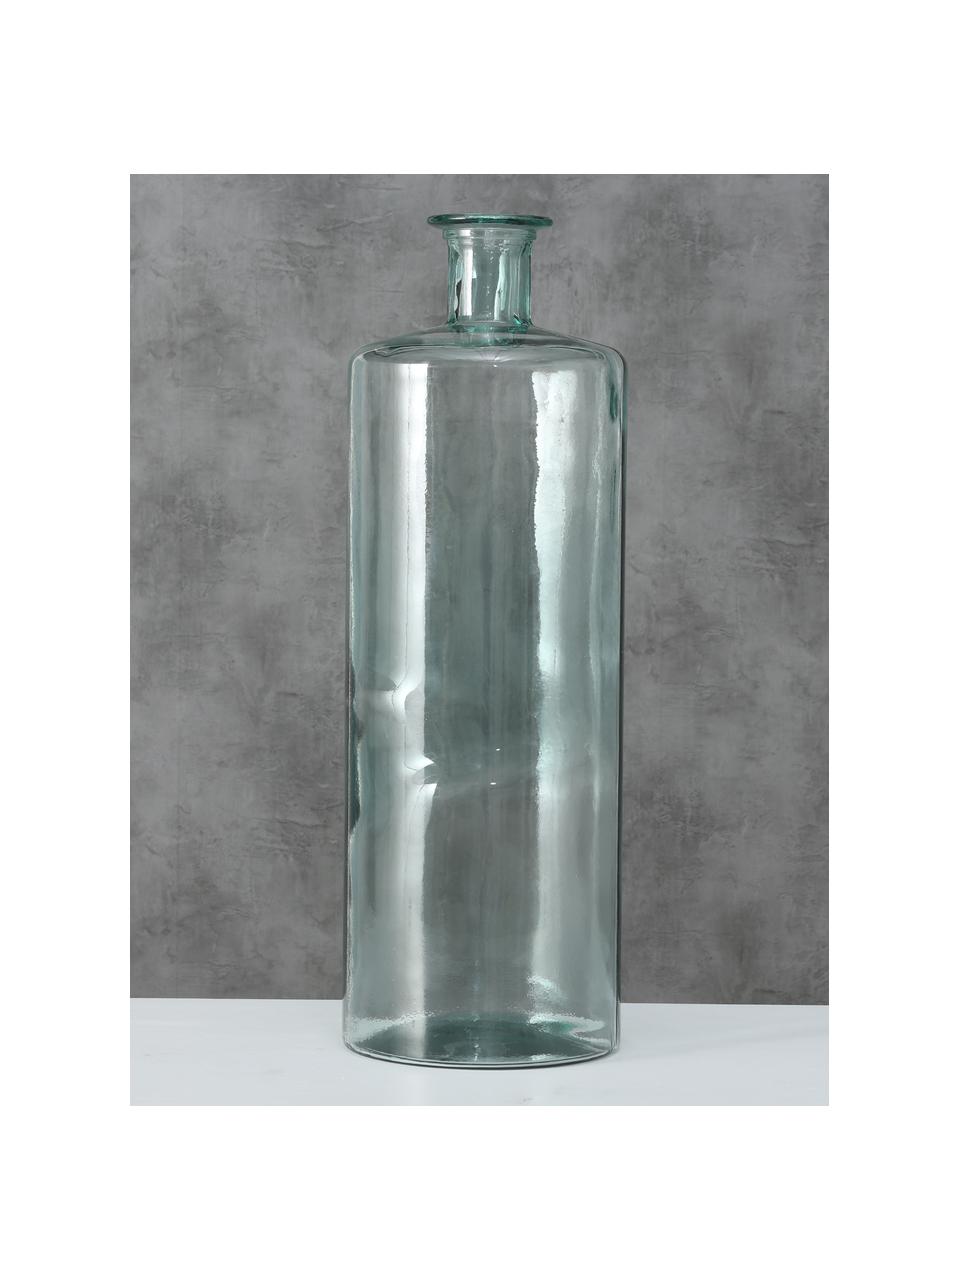 Vase à poser au sol en verre Pavlo, Verre, Vert, transparent, Ø 25 cm x haut. 75 cm